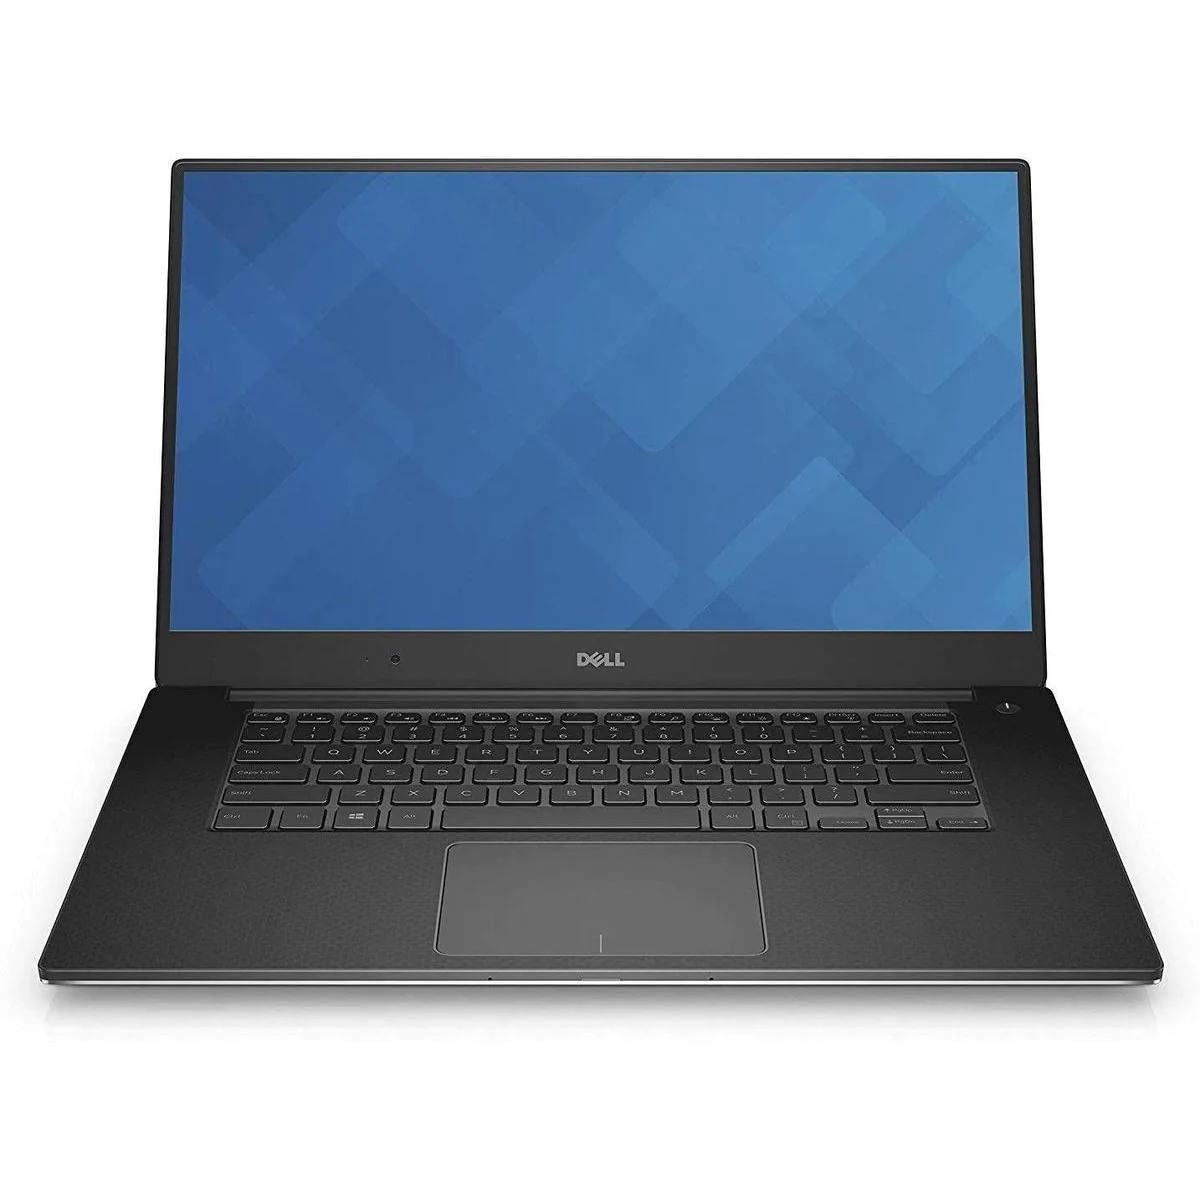 Dell Precision 15 5520 Notebook